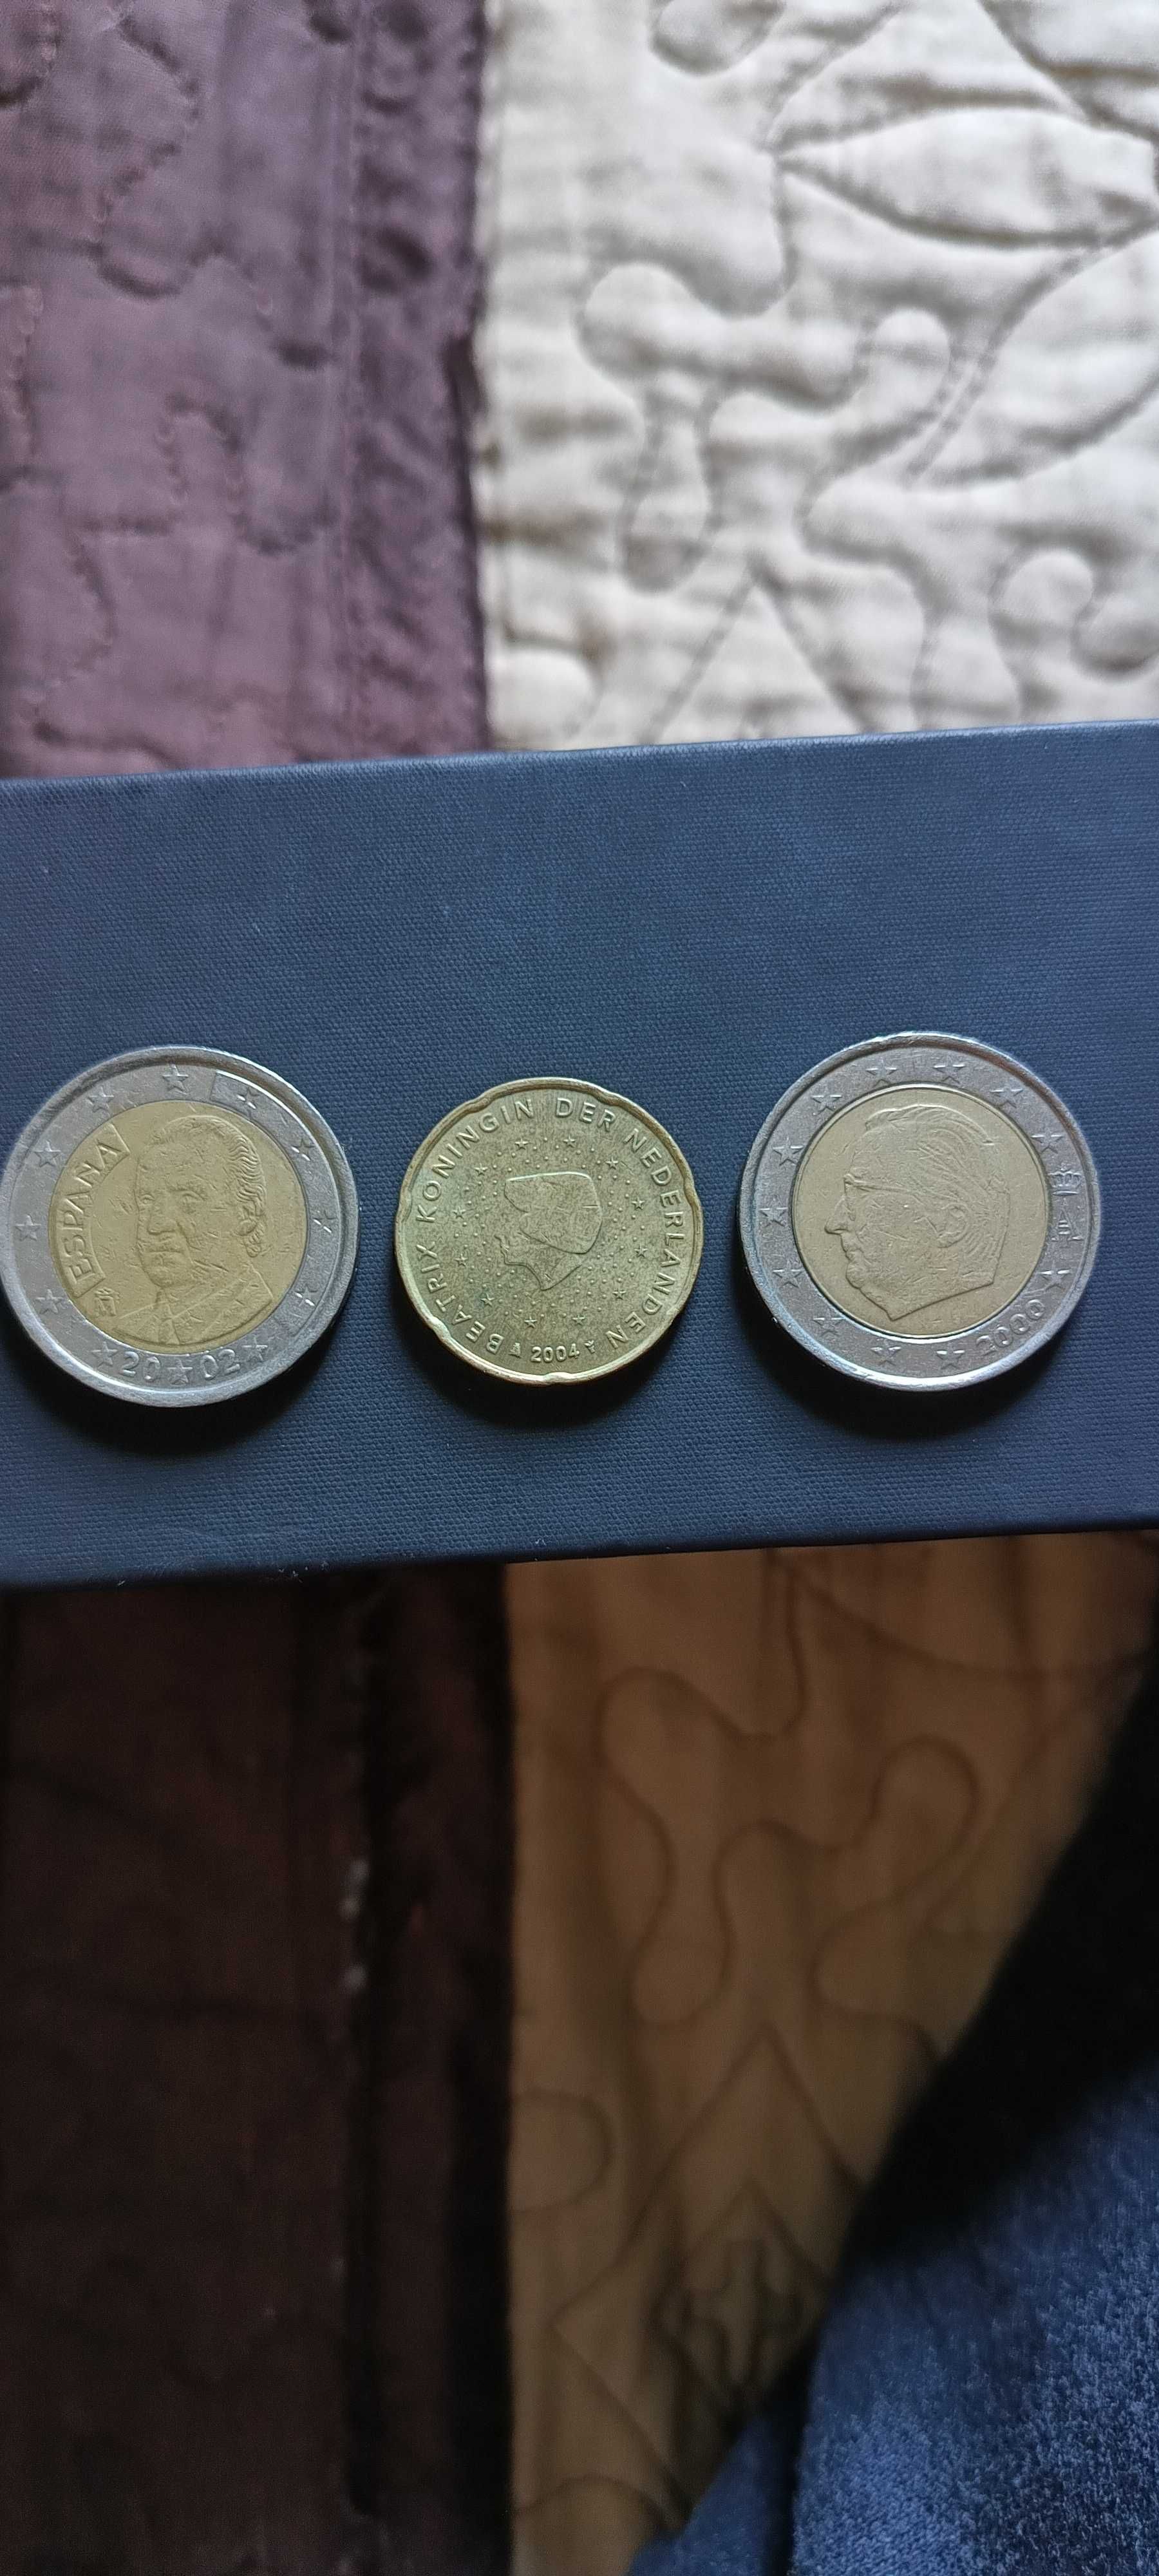 Monede pentru colectionari